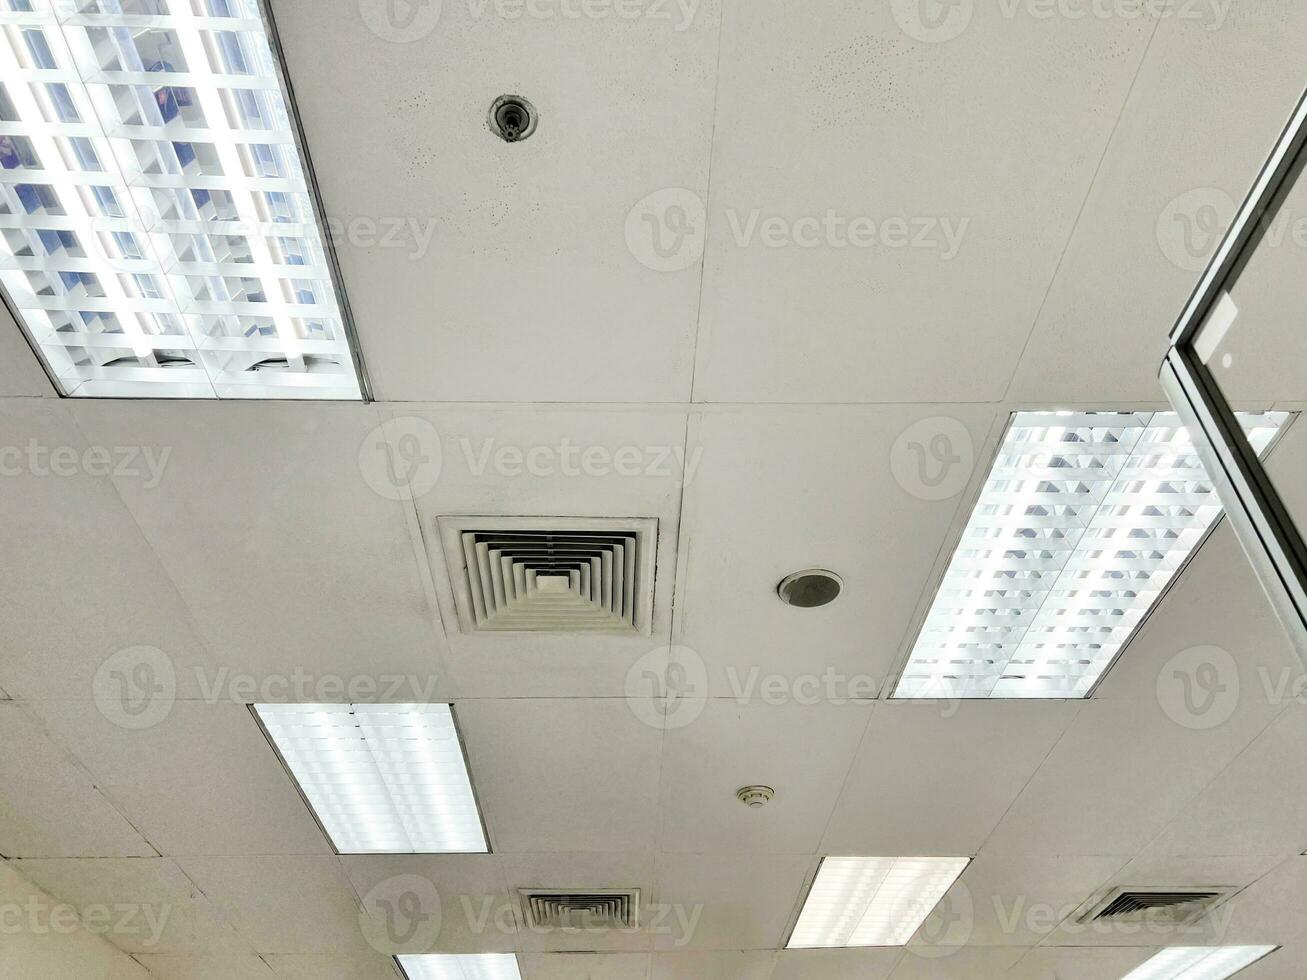 climatiseur de type cassette monté au plafond et lampe moderne au plafond blanc. climatiseur gainable pour la maison ou le bureau photo